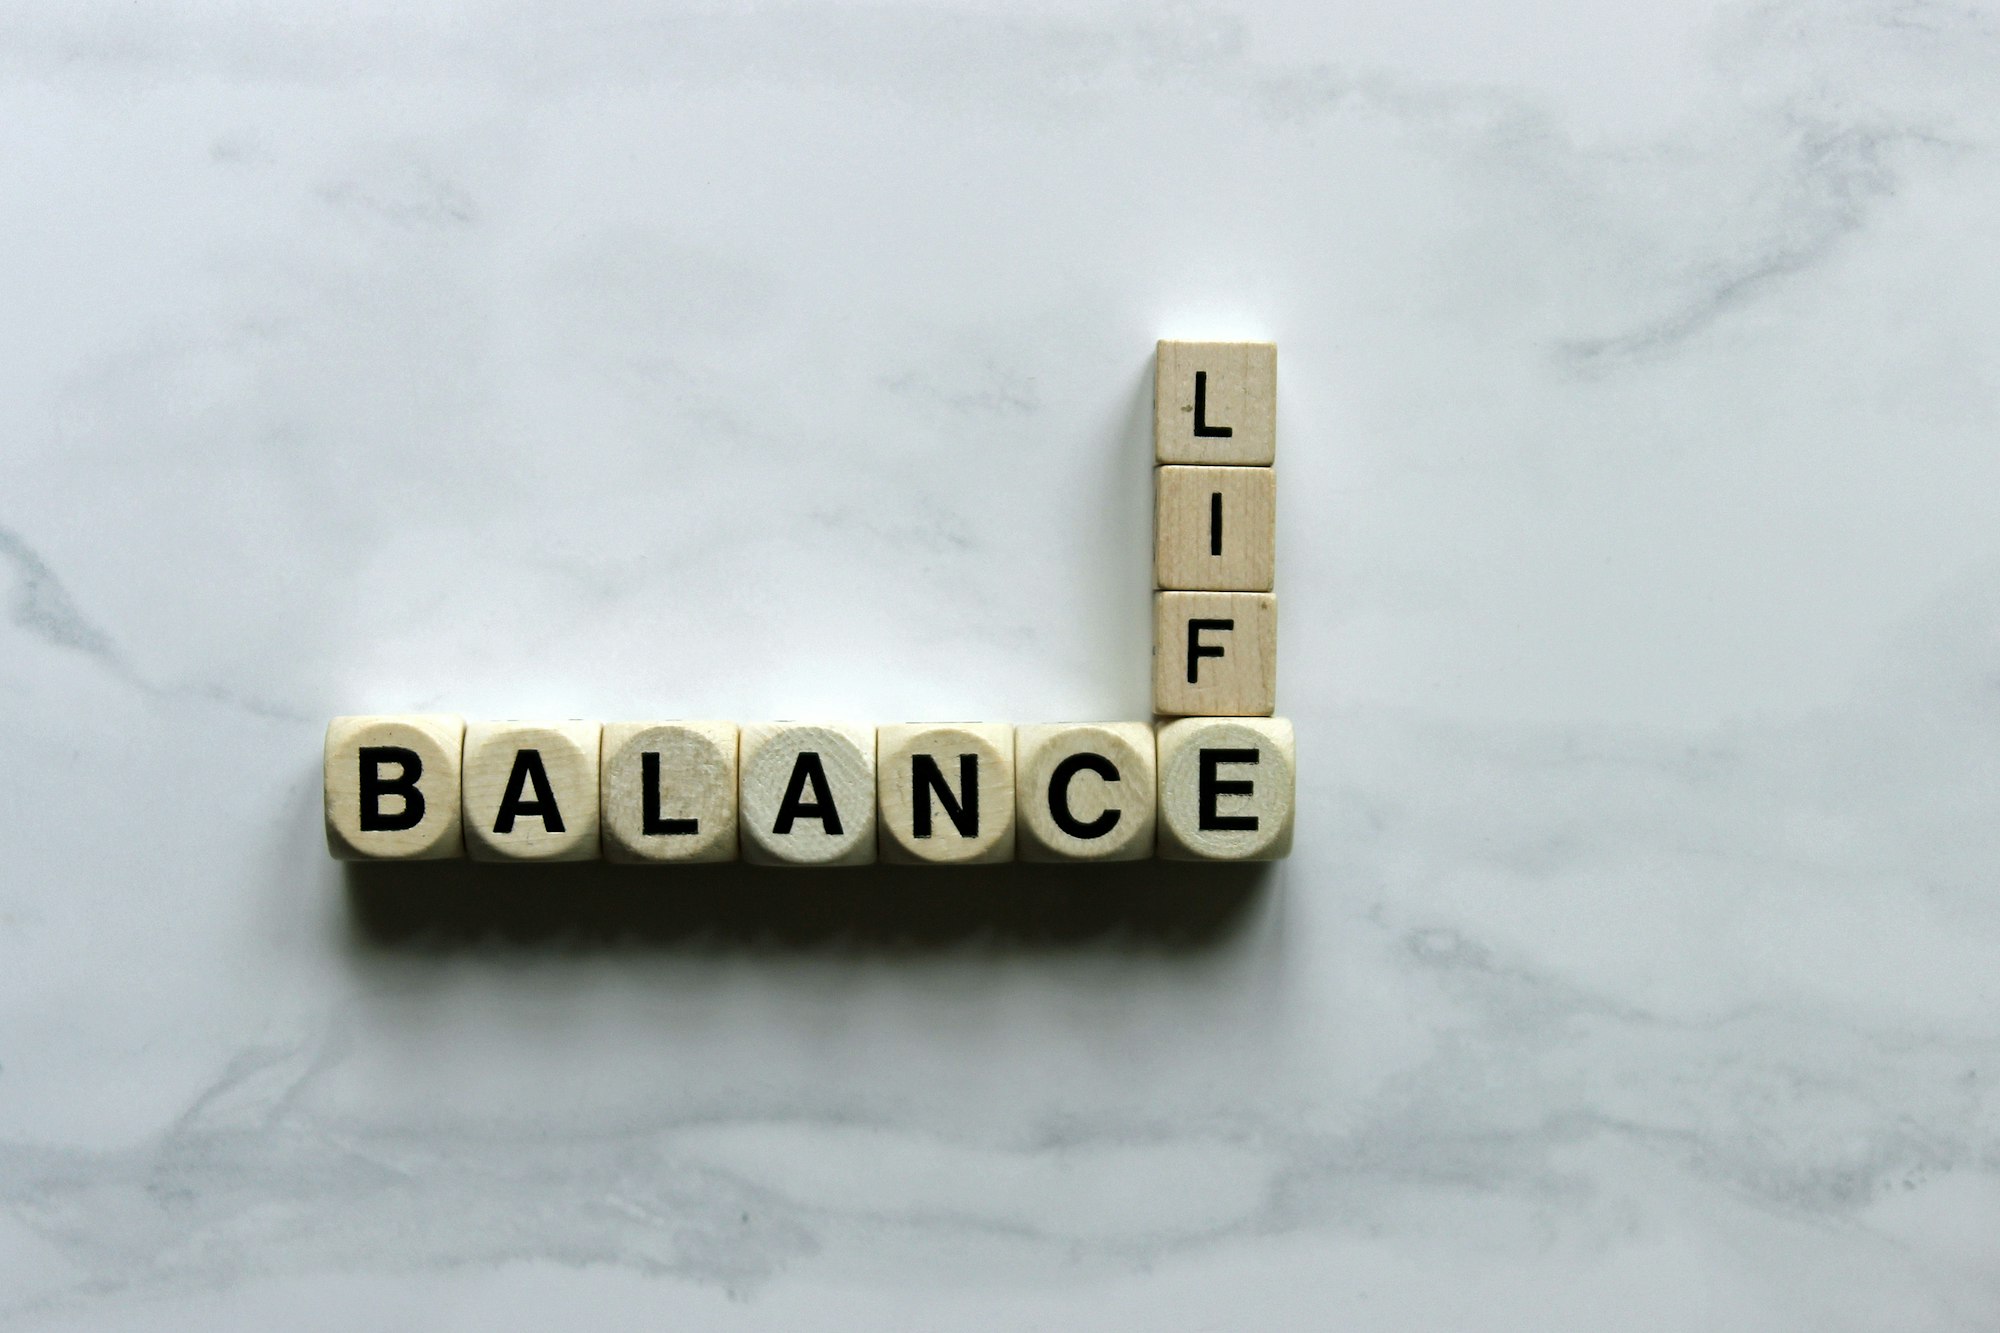 Balance and life